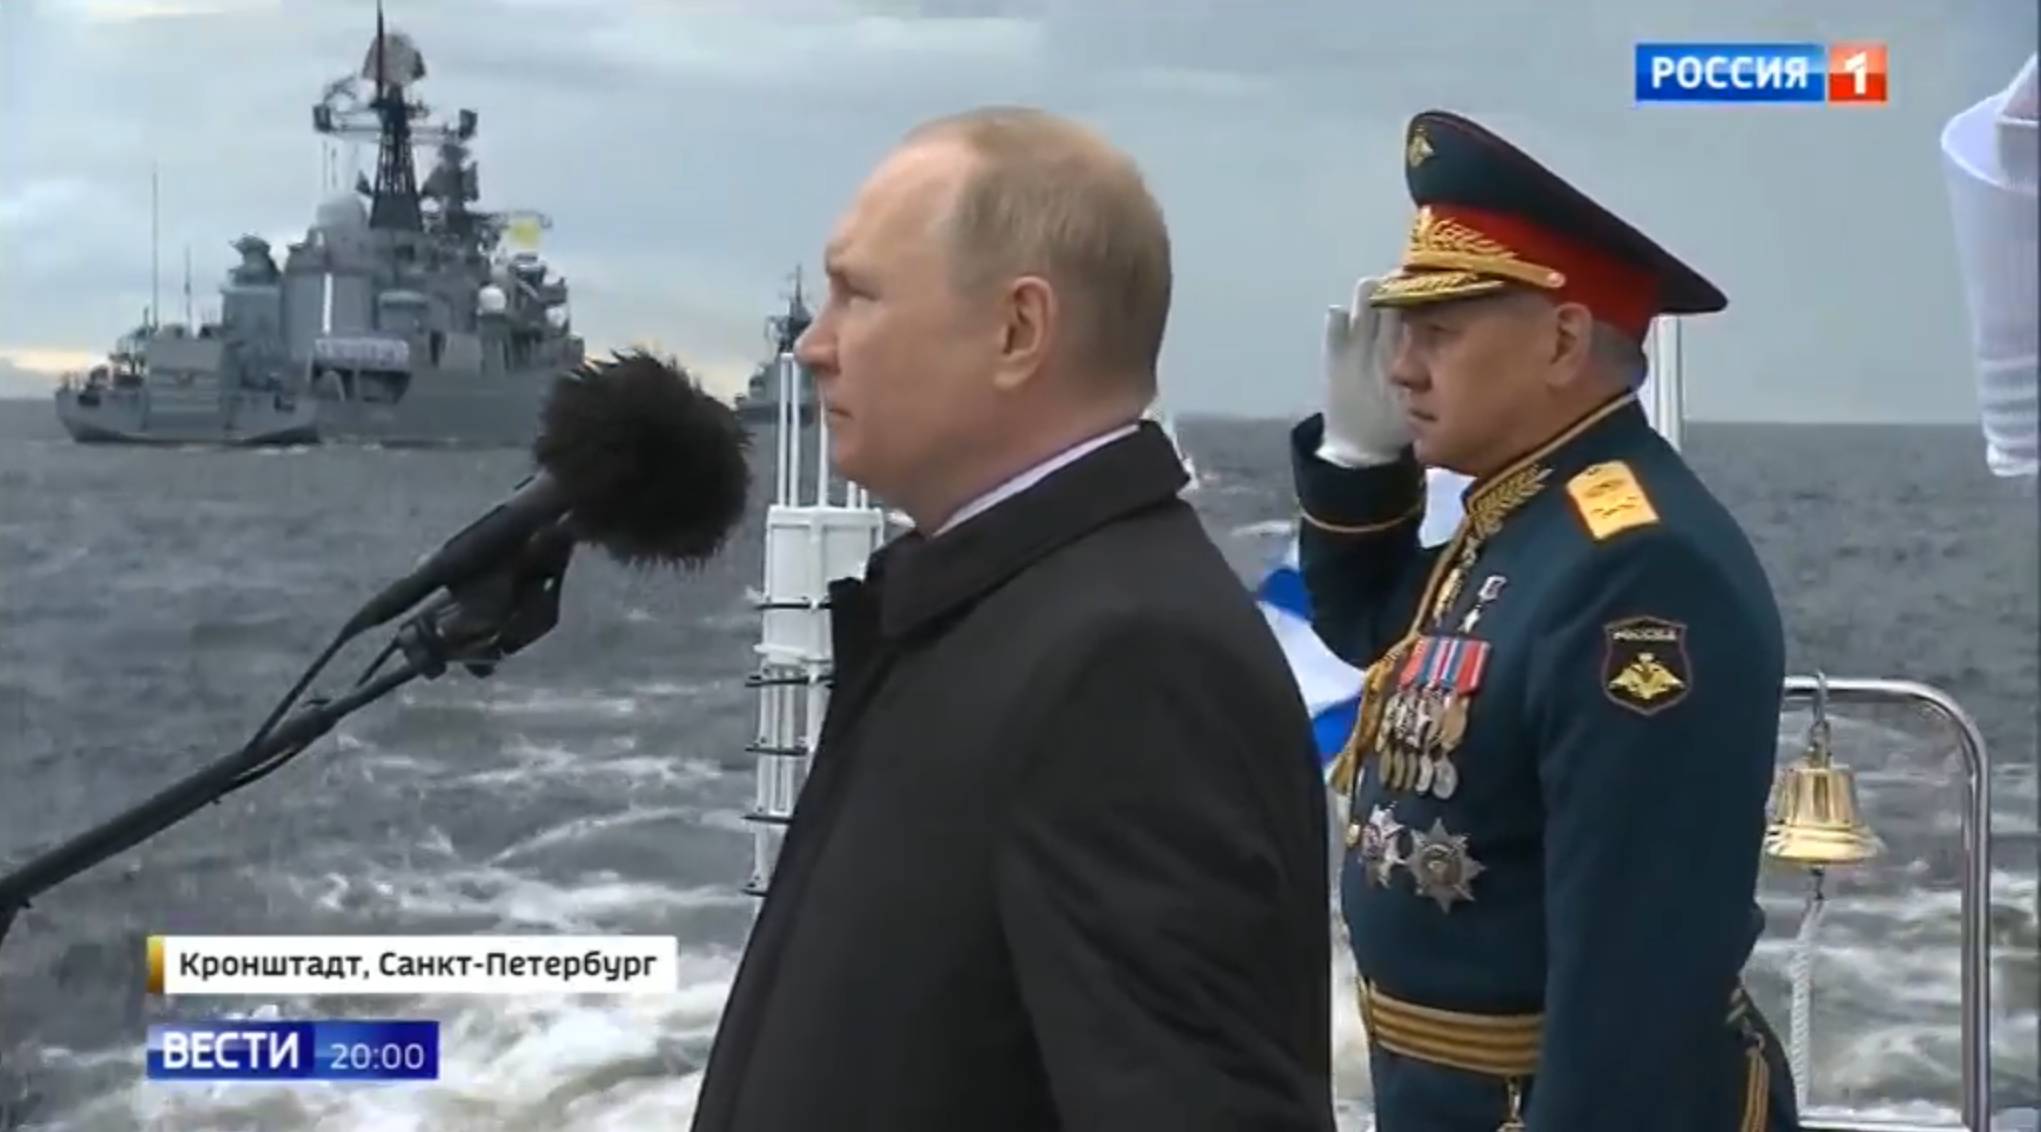 Putin mówi przez mikrofon do okrętu. Obok Szojgu w mundurze